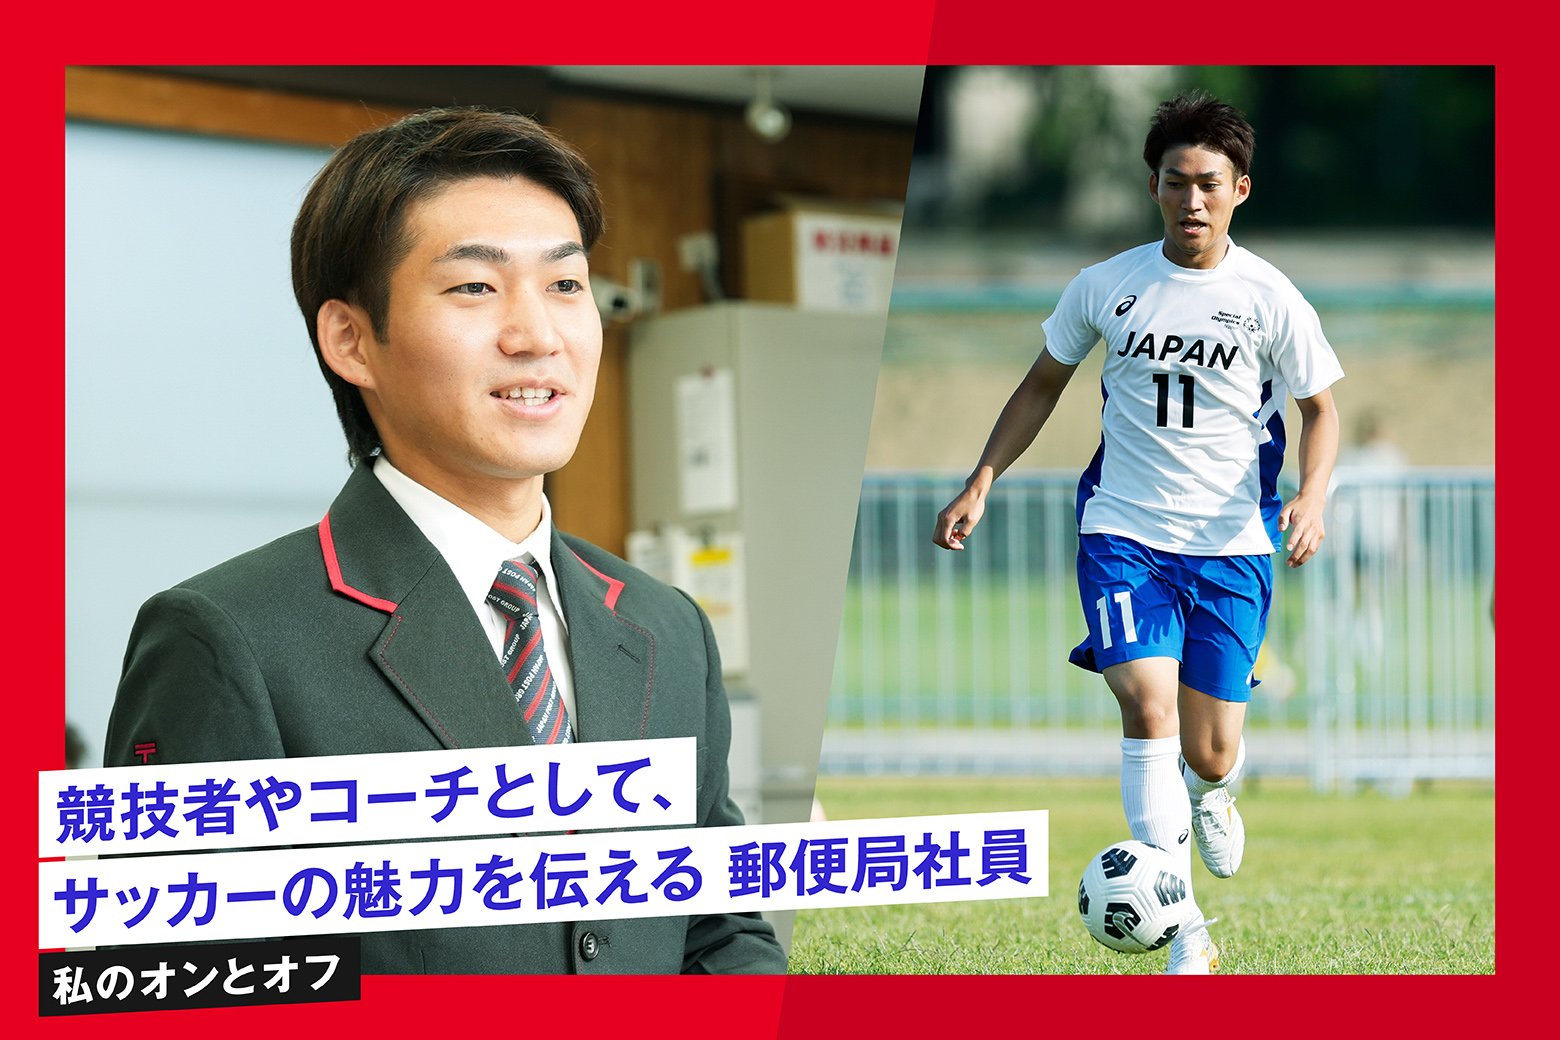 私のオンとオフ スイッチインタビュー 世界大会に日本代表として出場！ ユニファイドサッカーで活躍する郵便局社員 